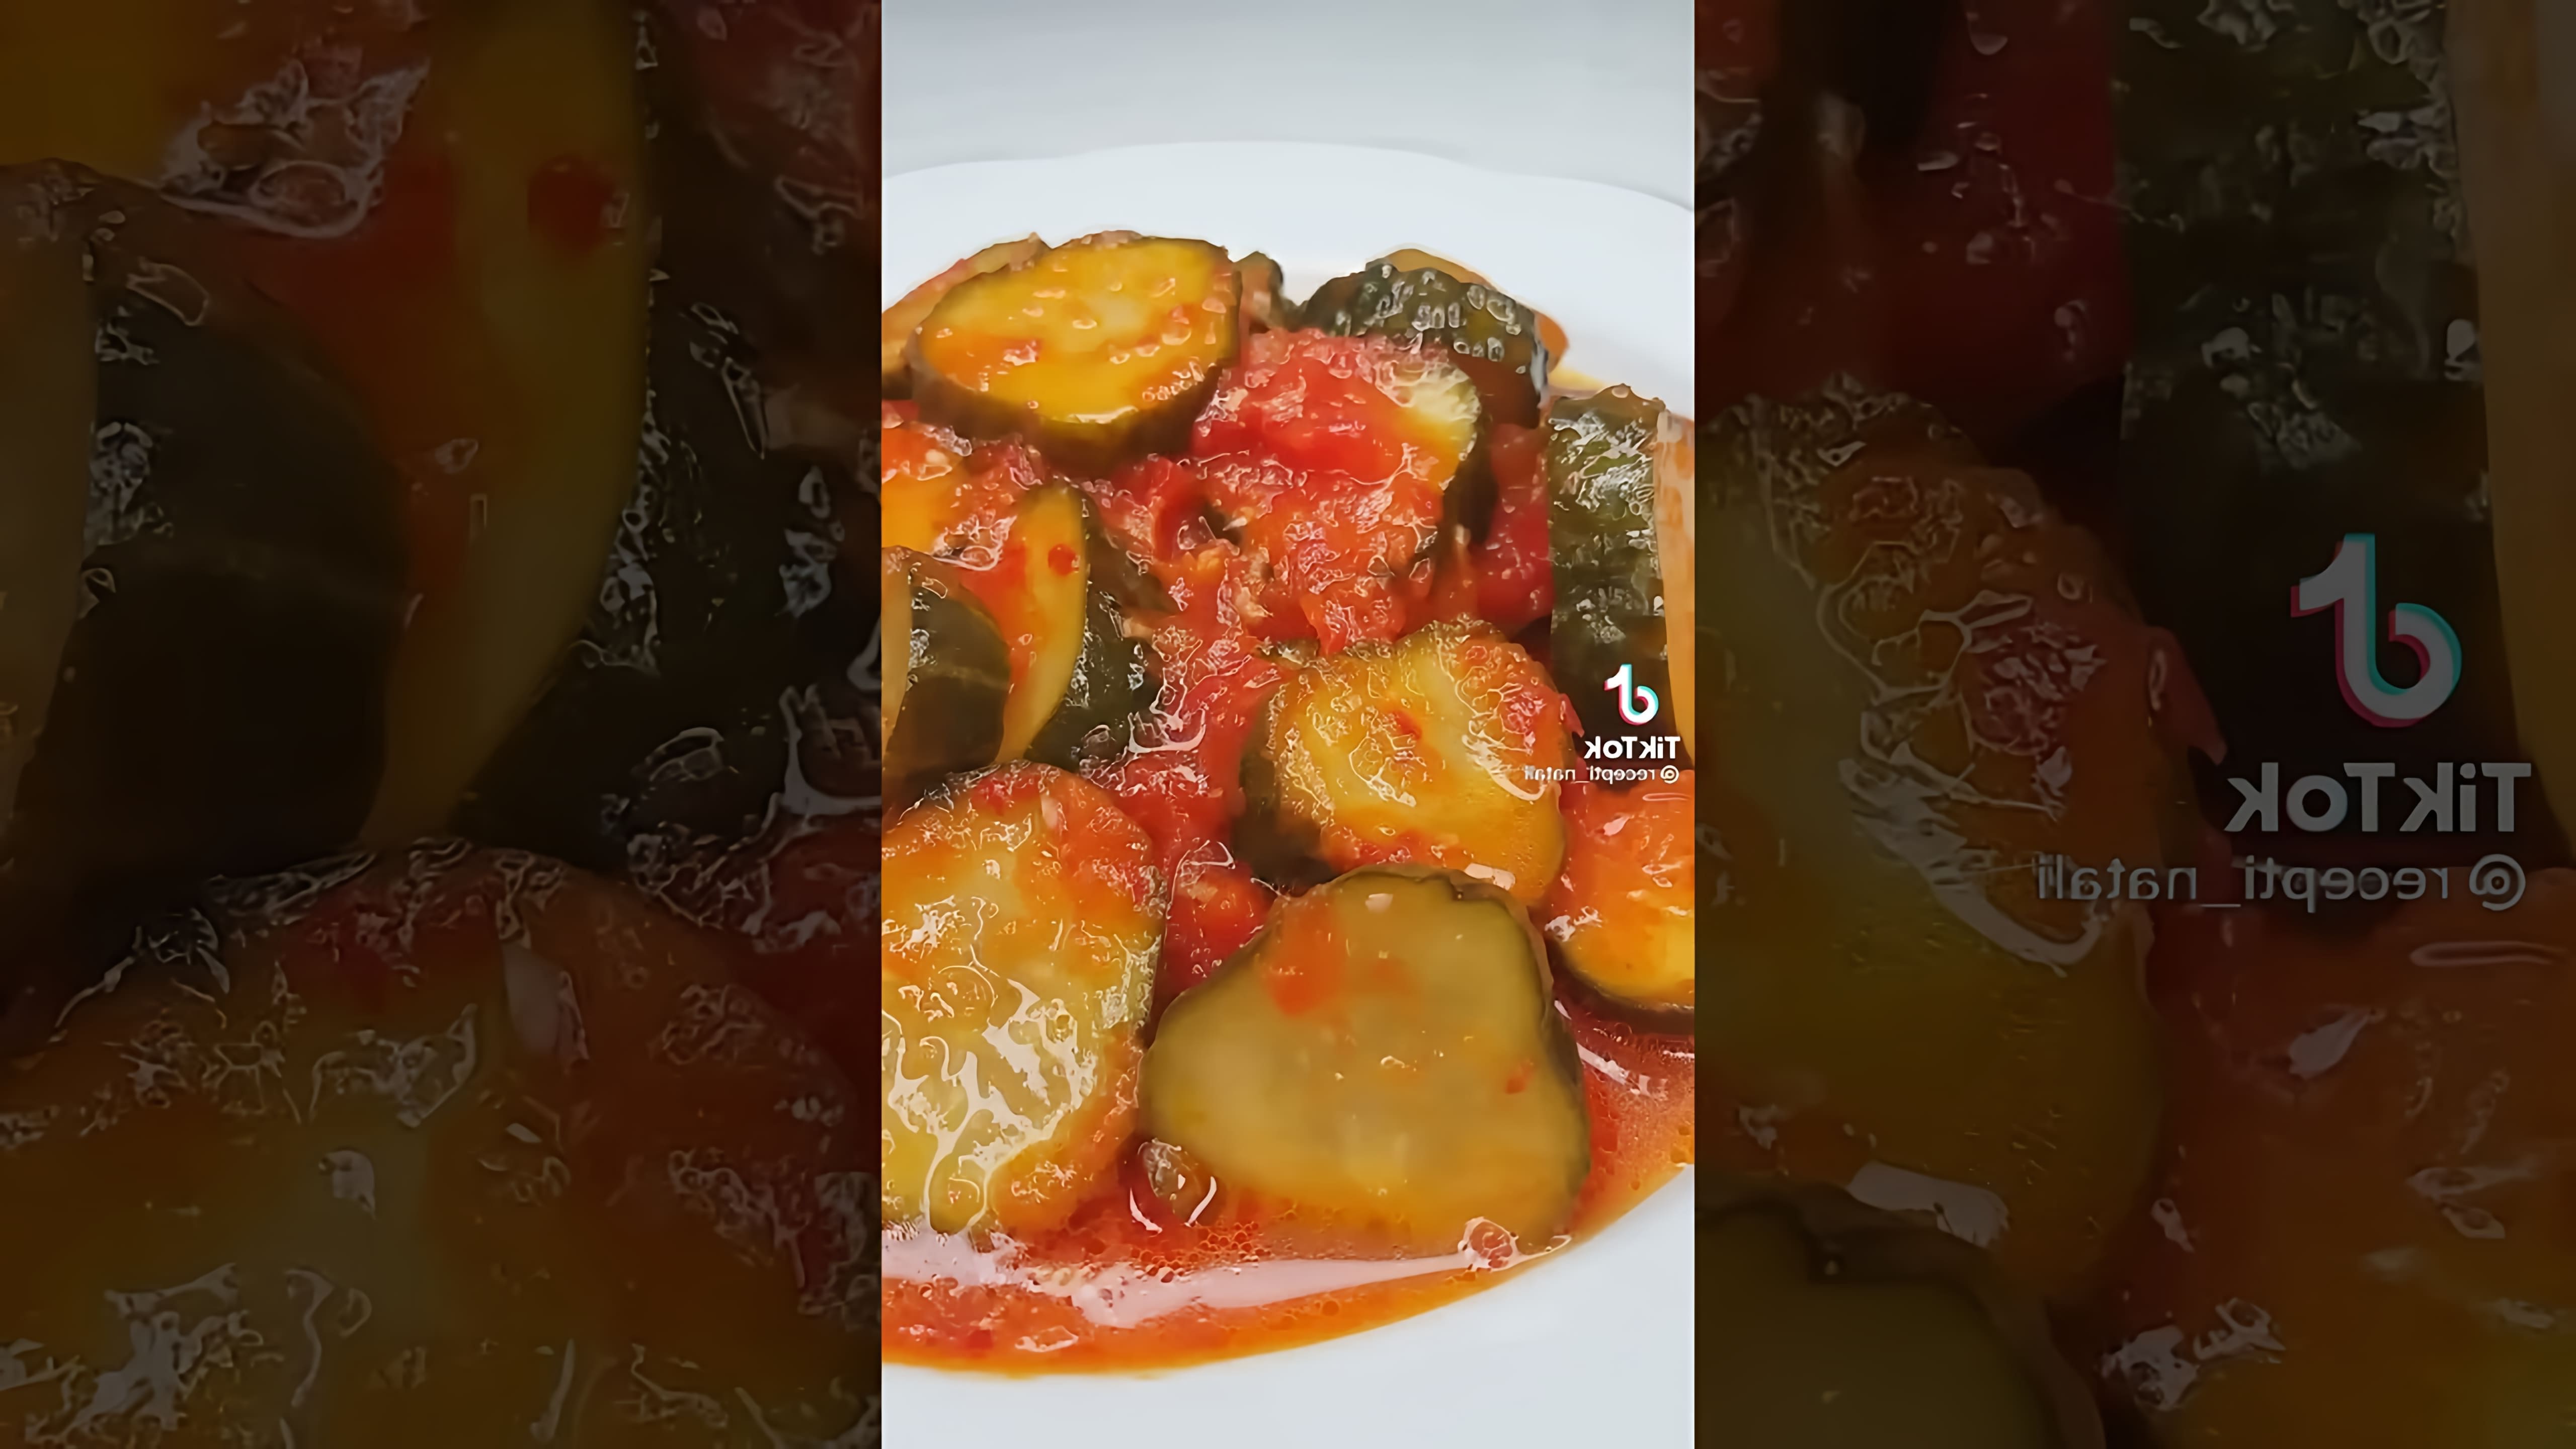 В этом видео демонстрируется рецепт приготовления маринованных огурцов в томате